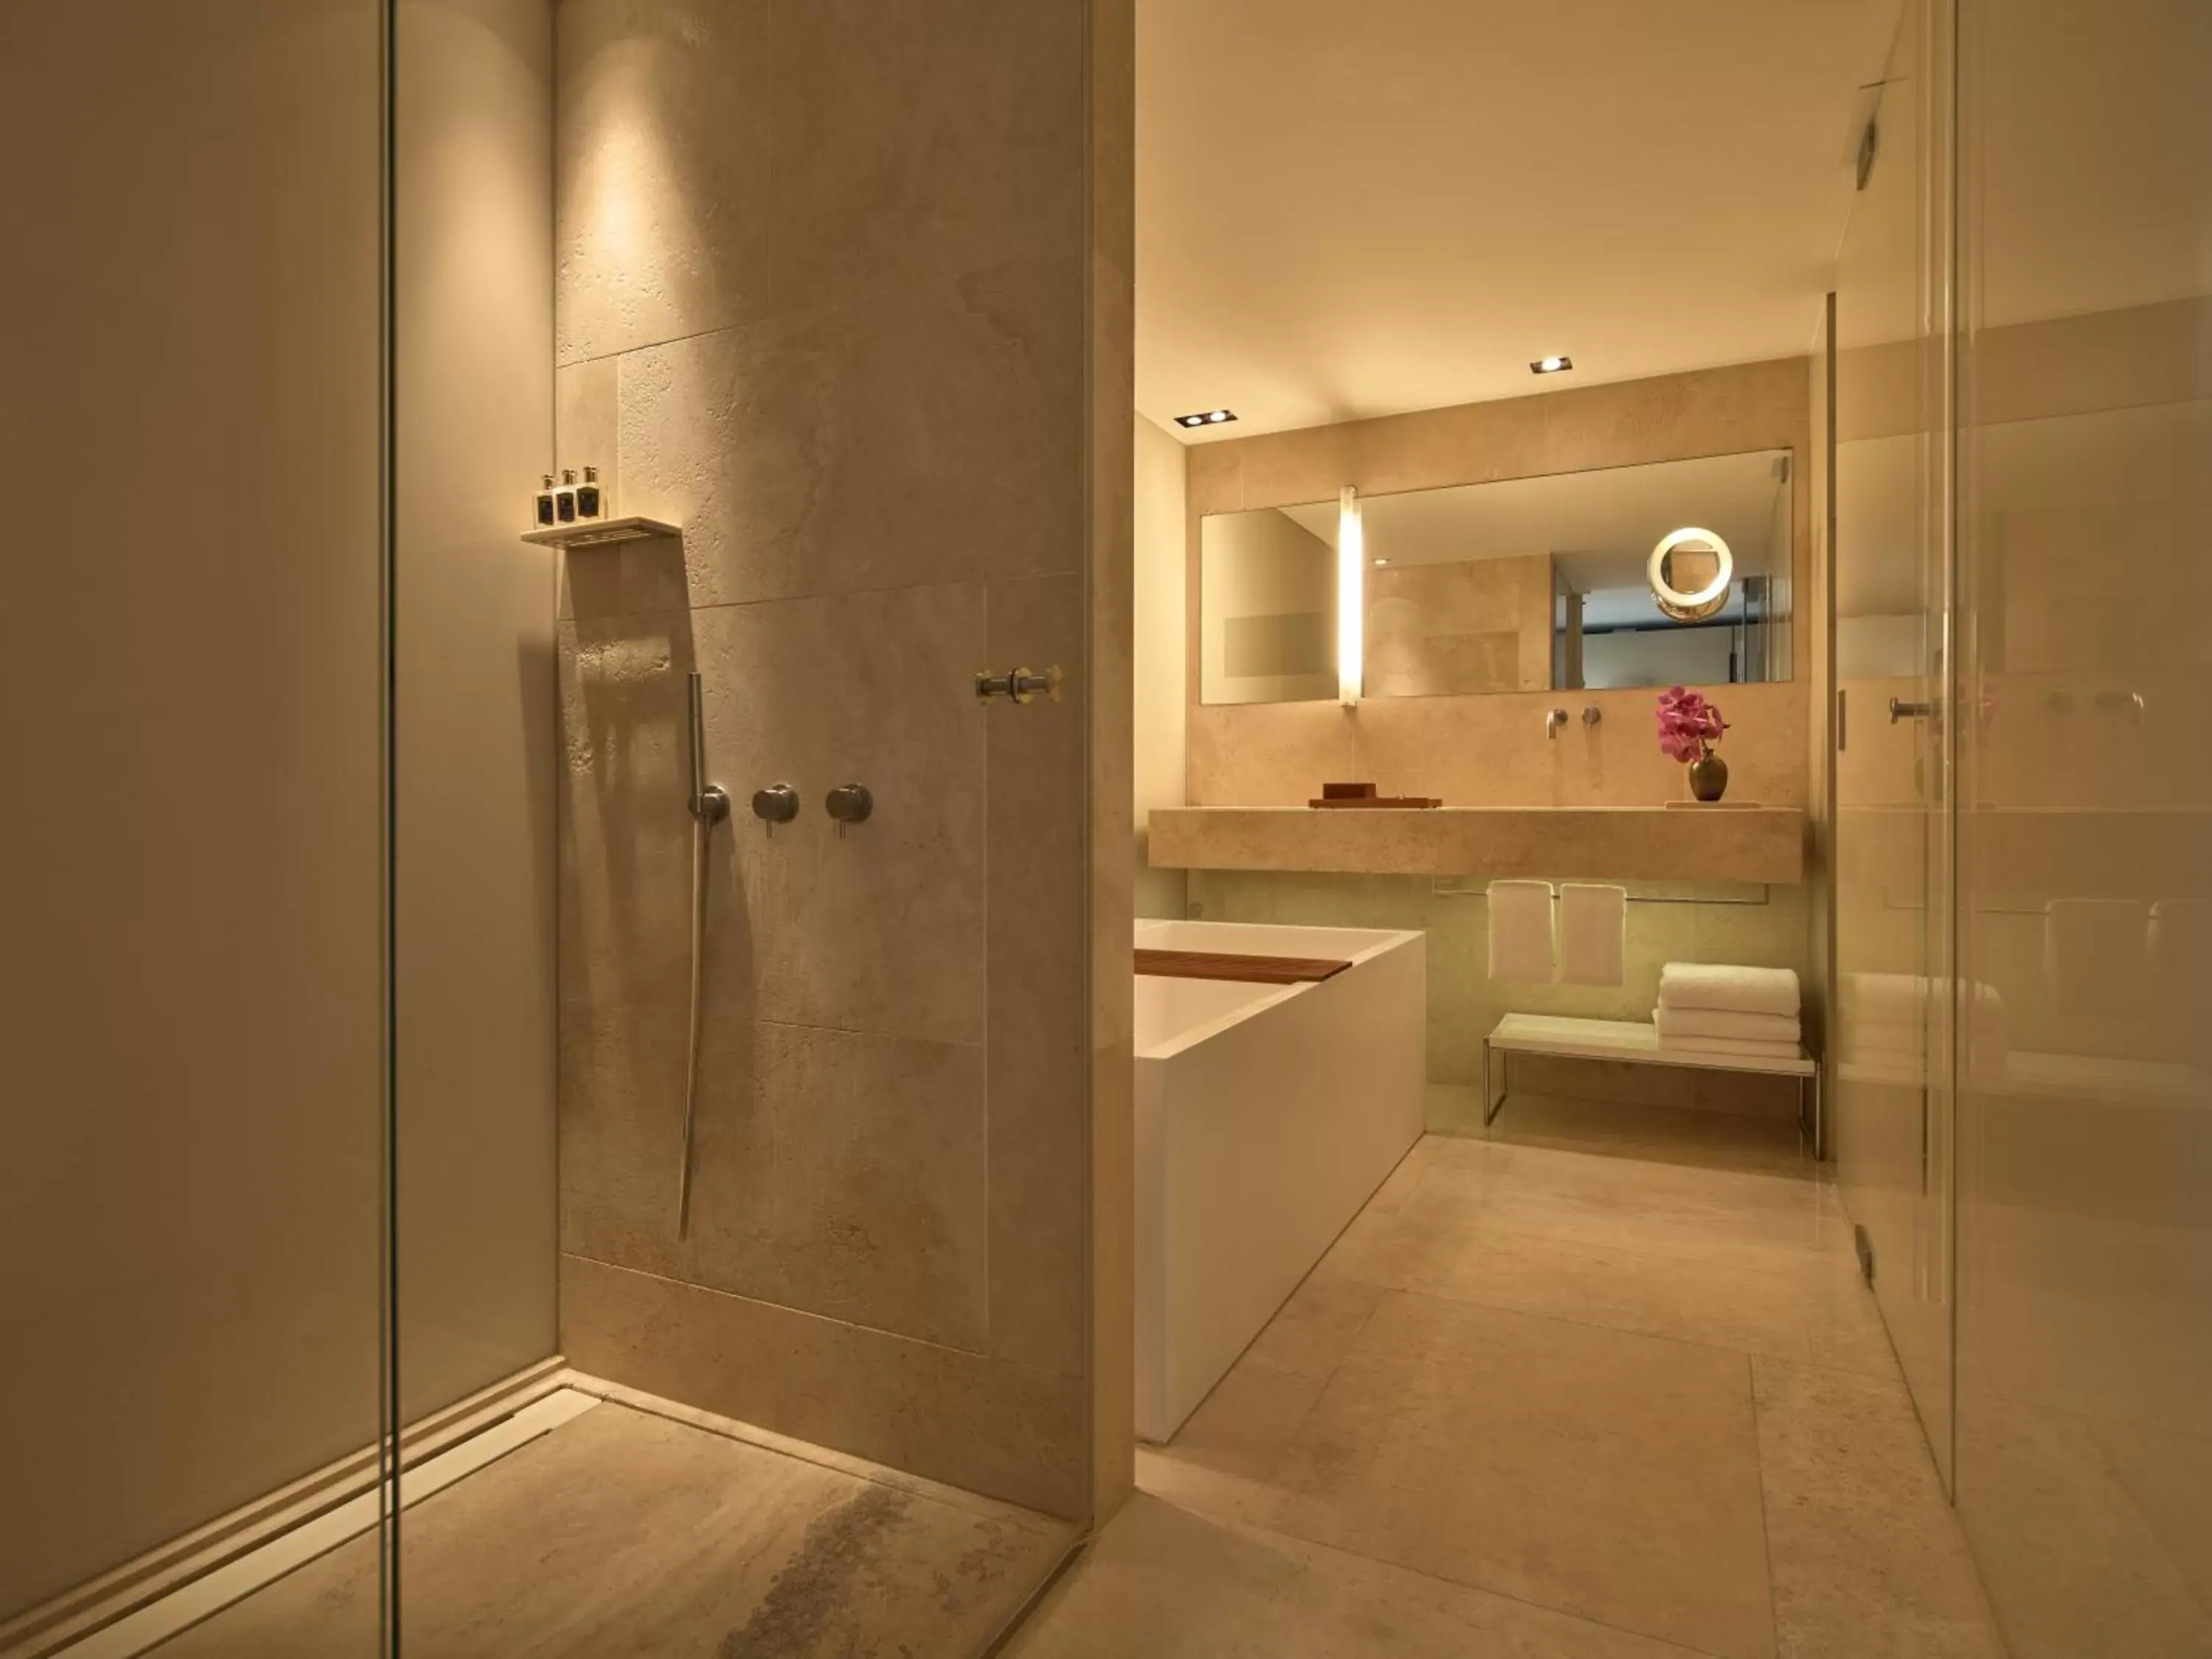 Bathroom in Conservatorium Hotel